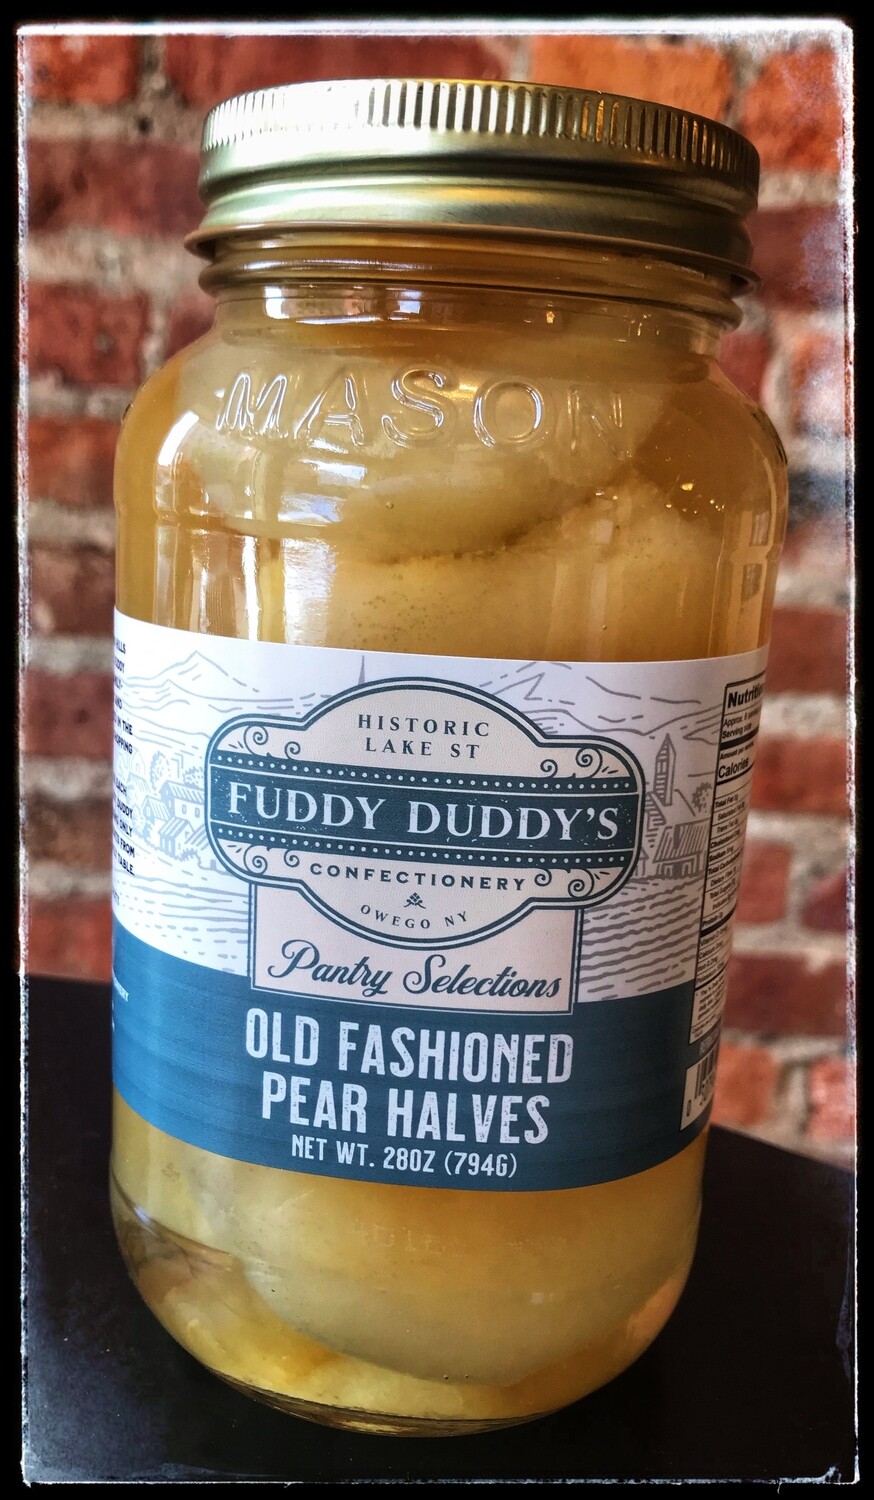 Fuddy Duddy's Old Fashioned Pear Halves